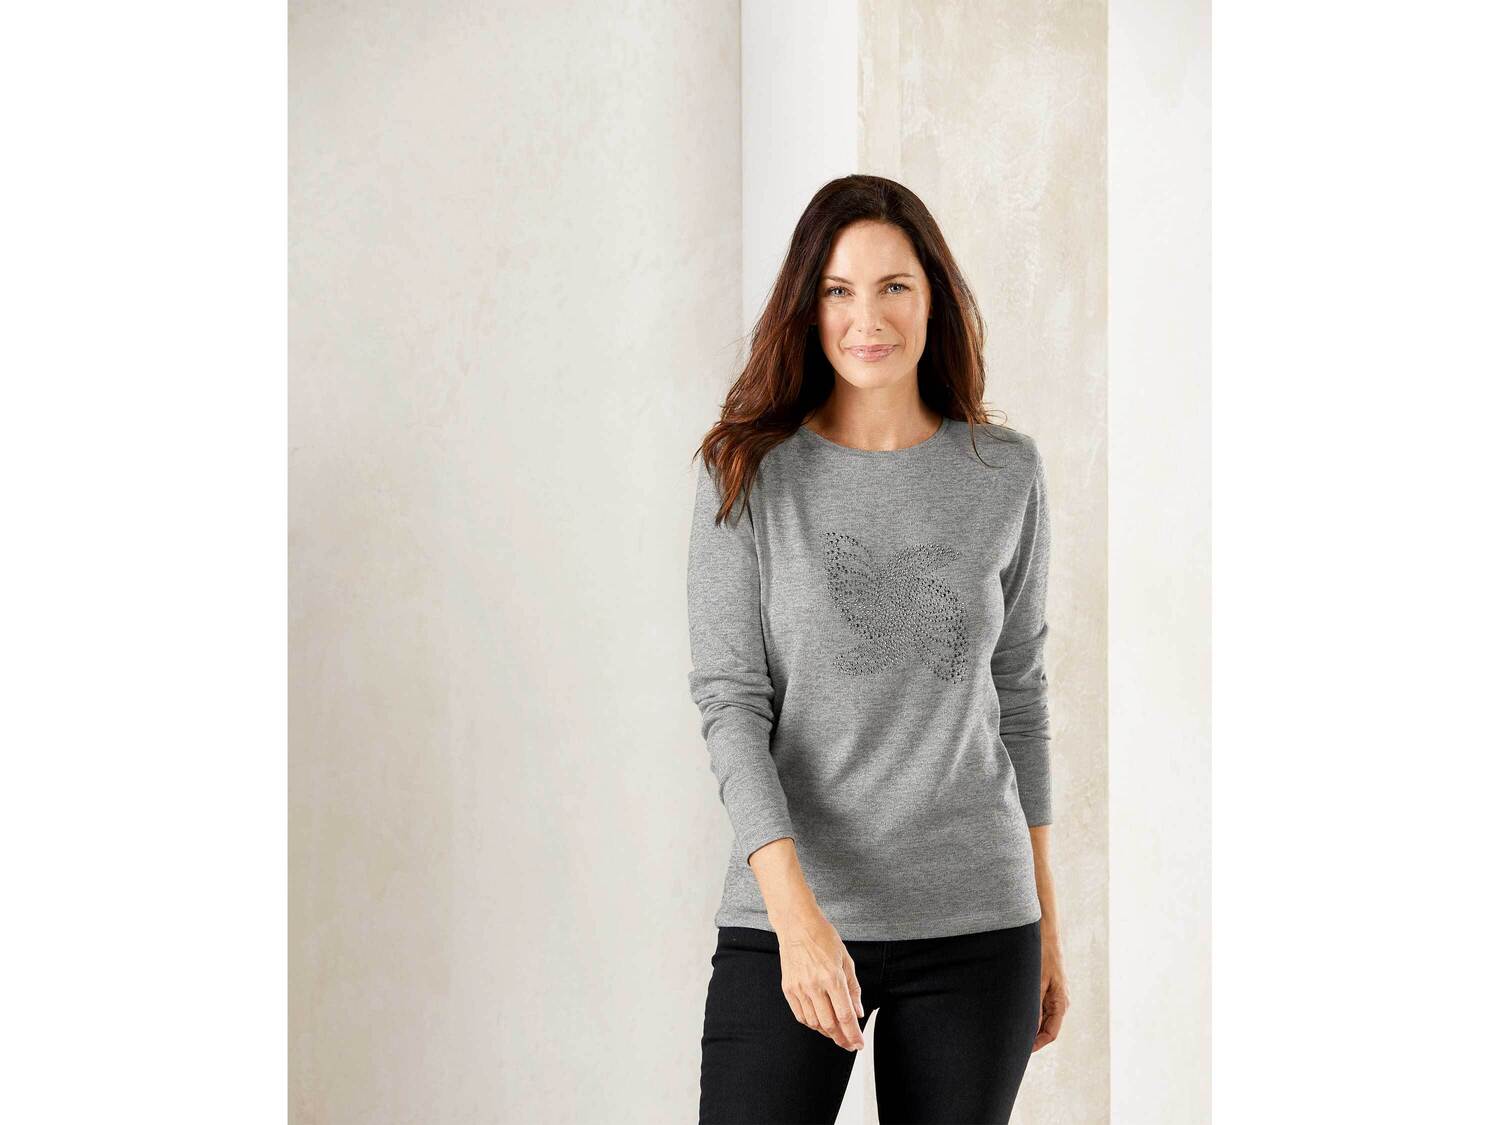 Sweter z wiskozą Esmara, cena 34,99 PLN 
- rozmiary: XS-L
- przyjemny w dotyku ...